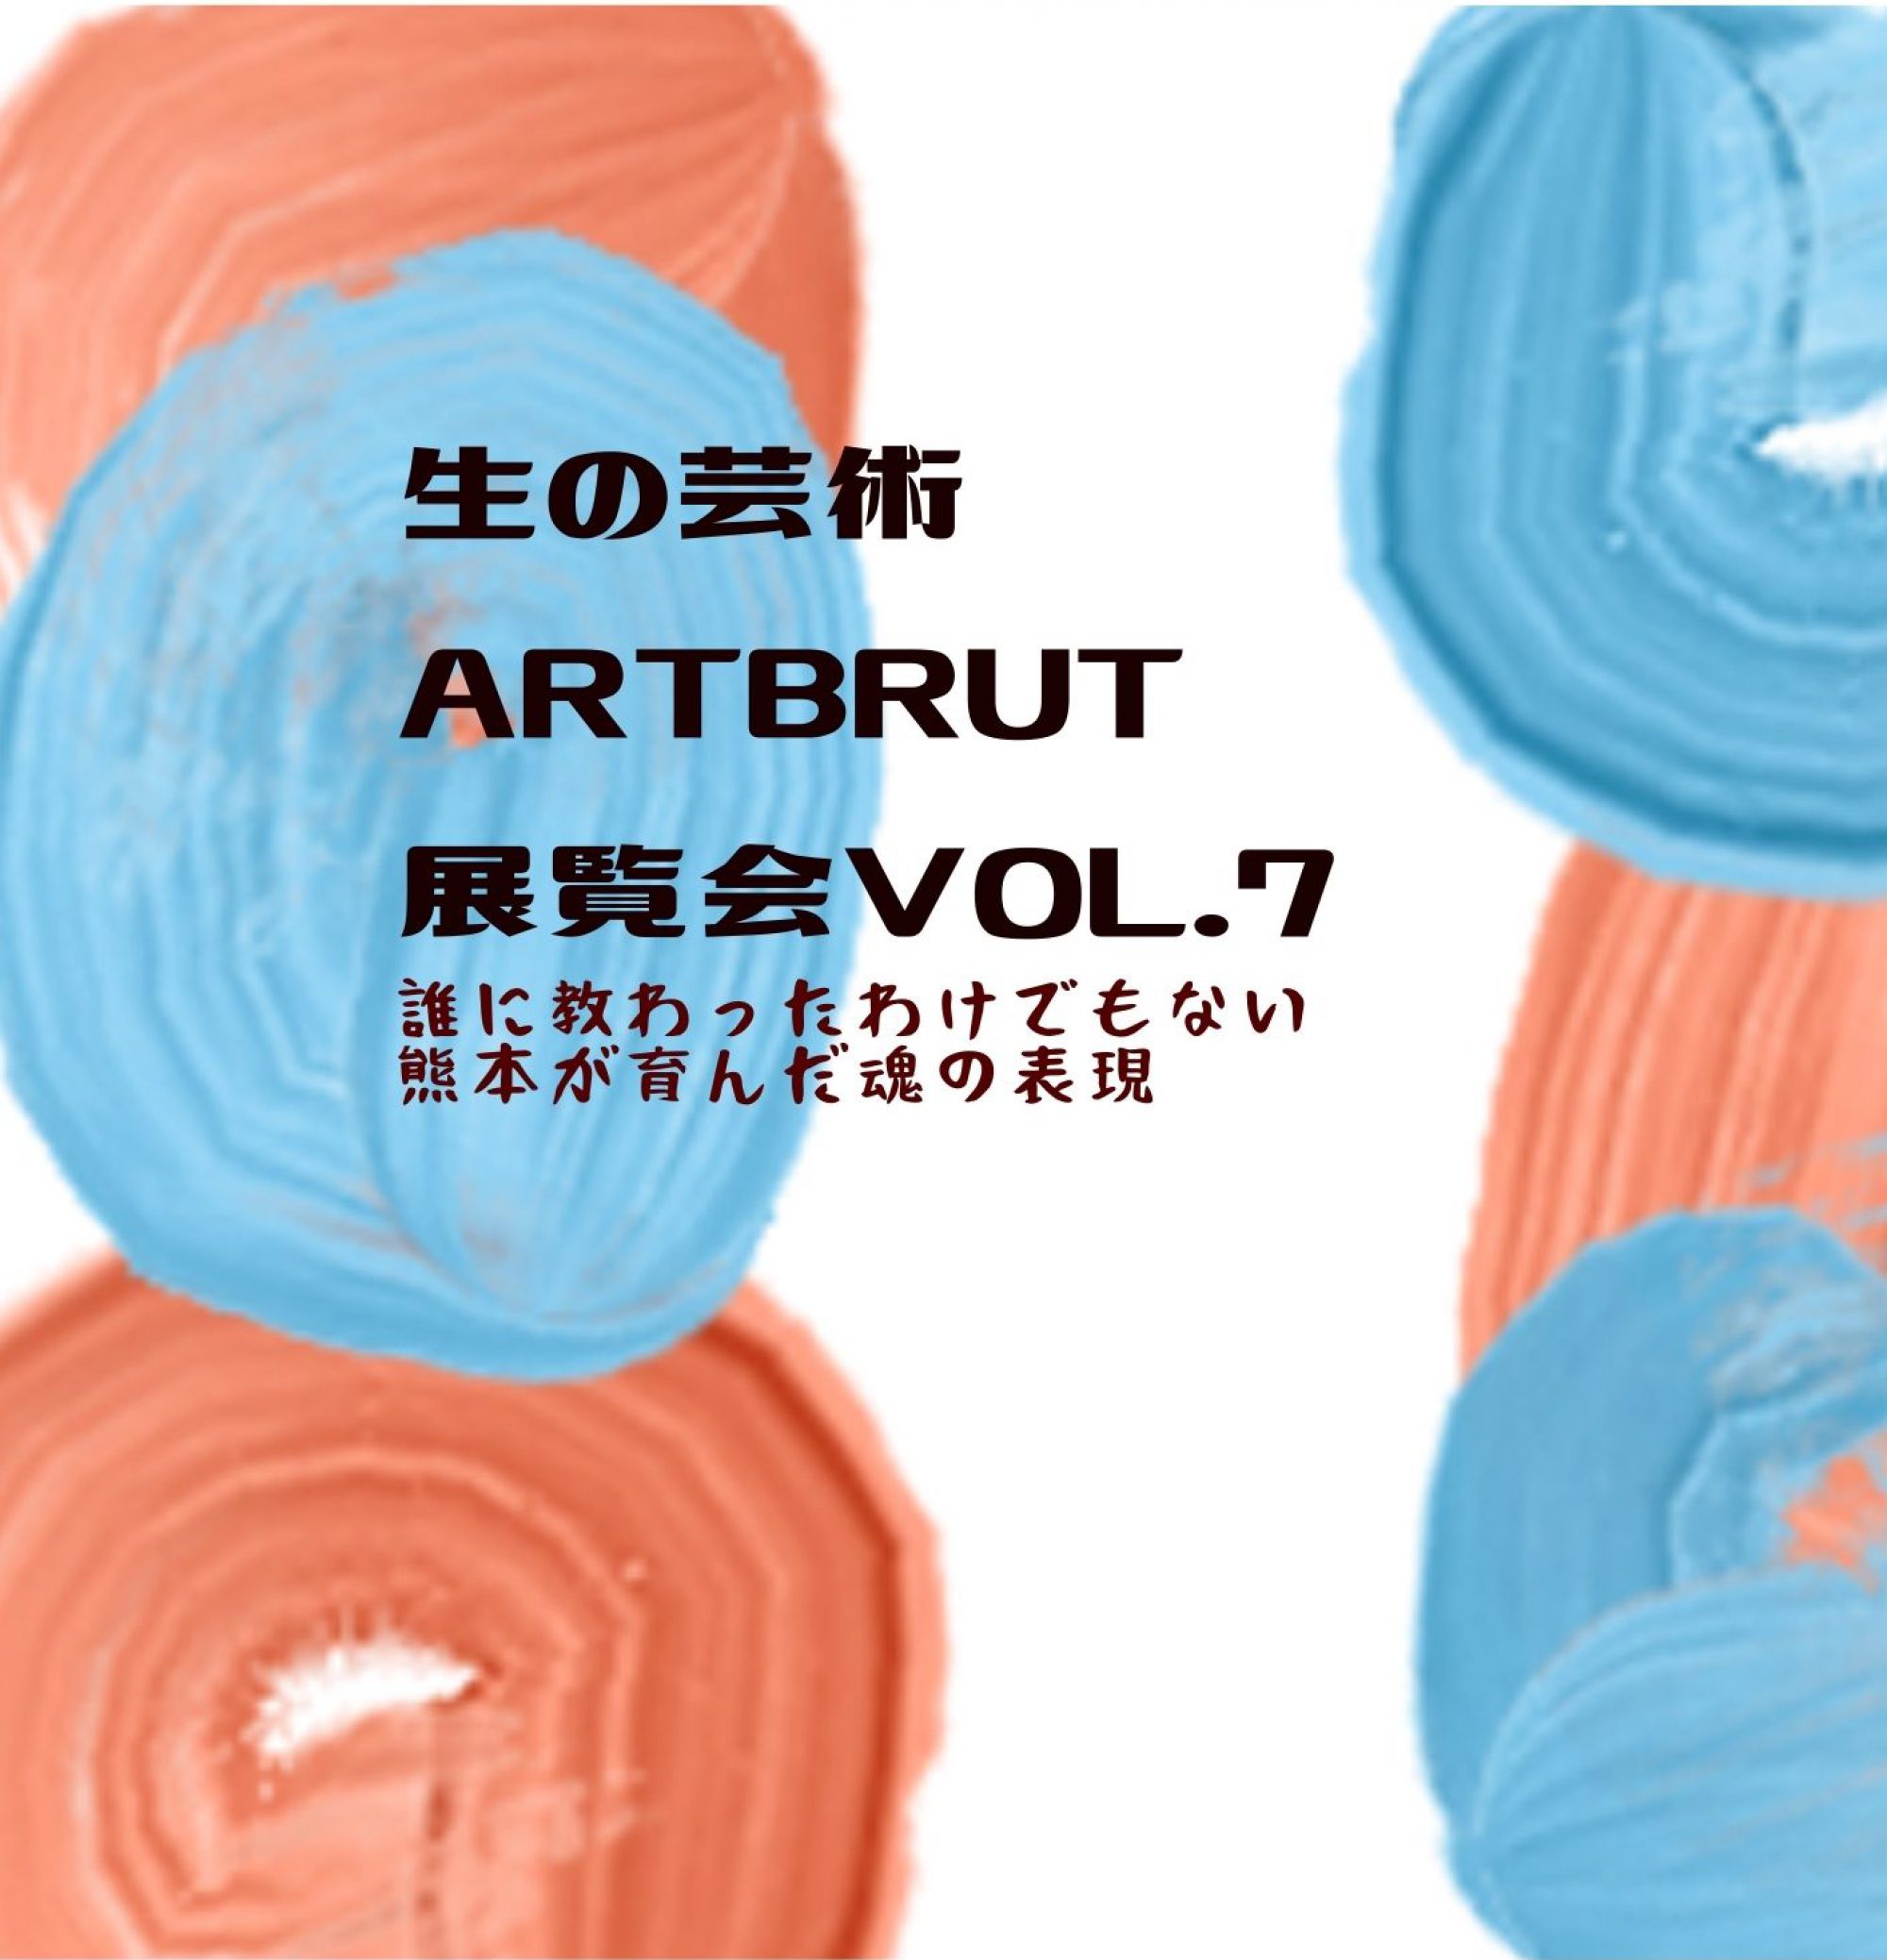 生の芸術 Art Brut 展覧会 vol.7